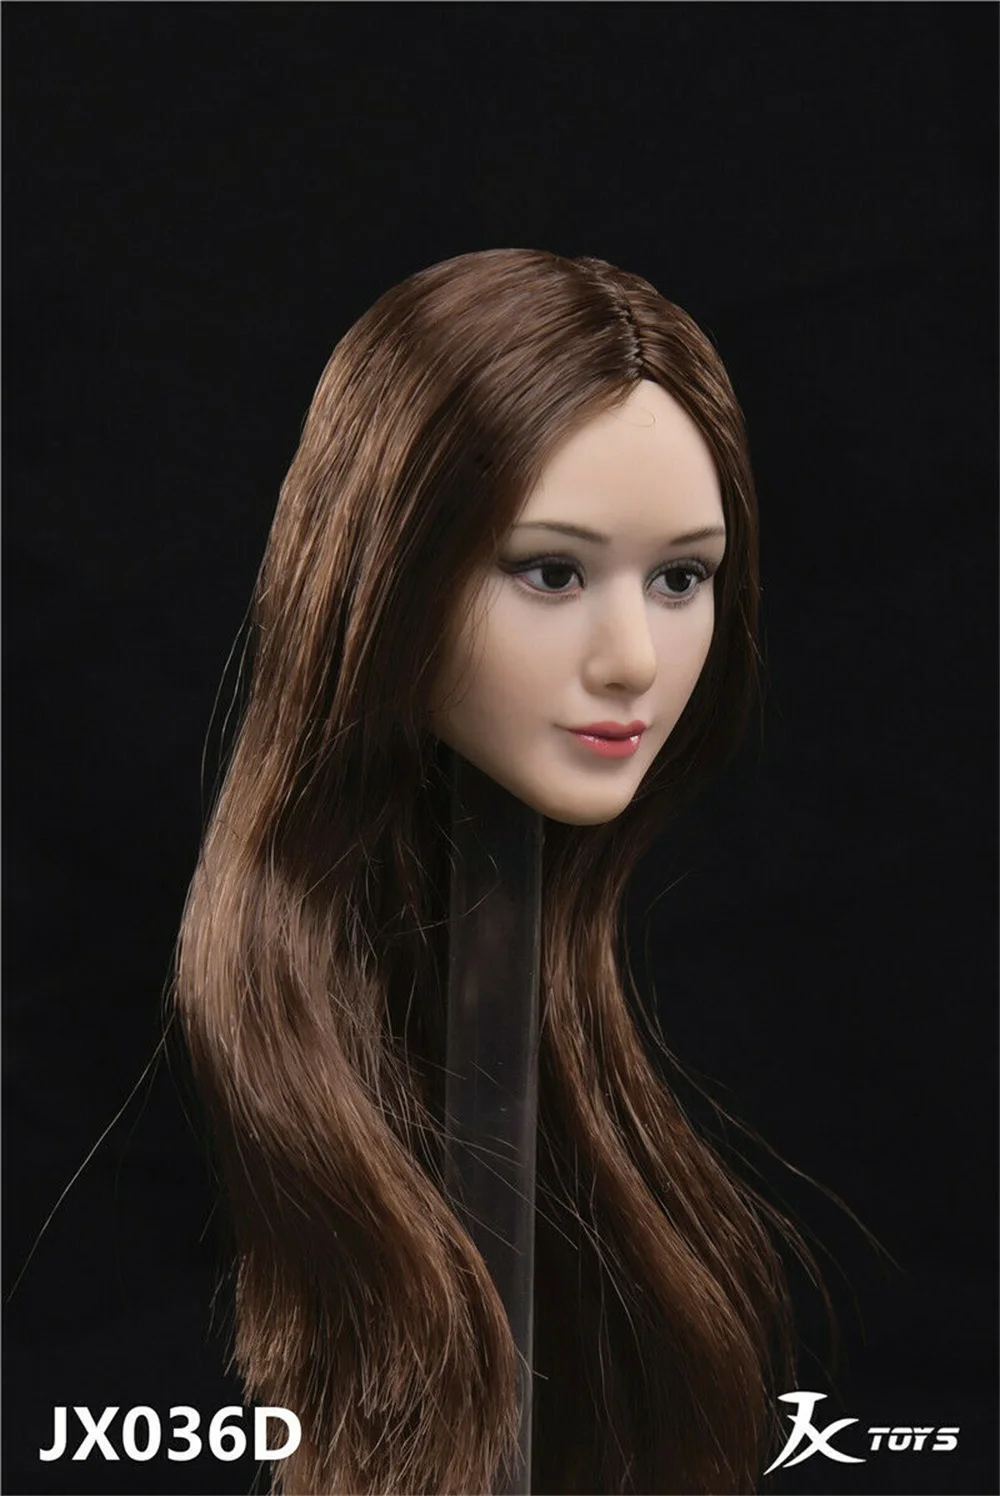 JXTOYS-036 1/6 азиатская красавица Девушка загар кожа голова лепить F12'' женская фигура кукла игрушка